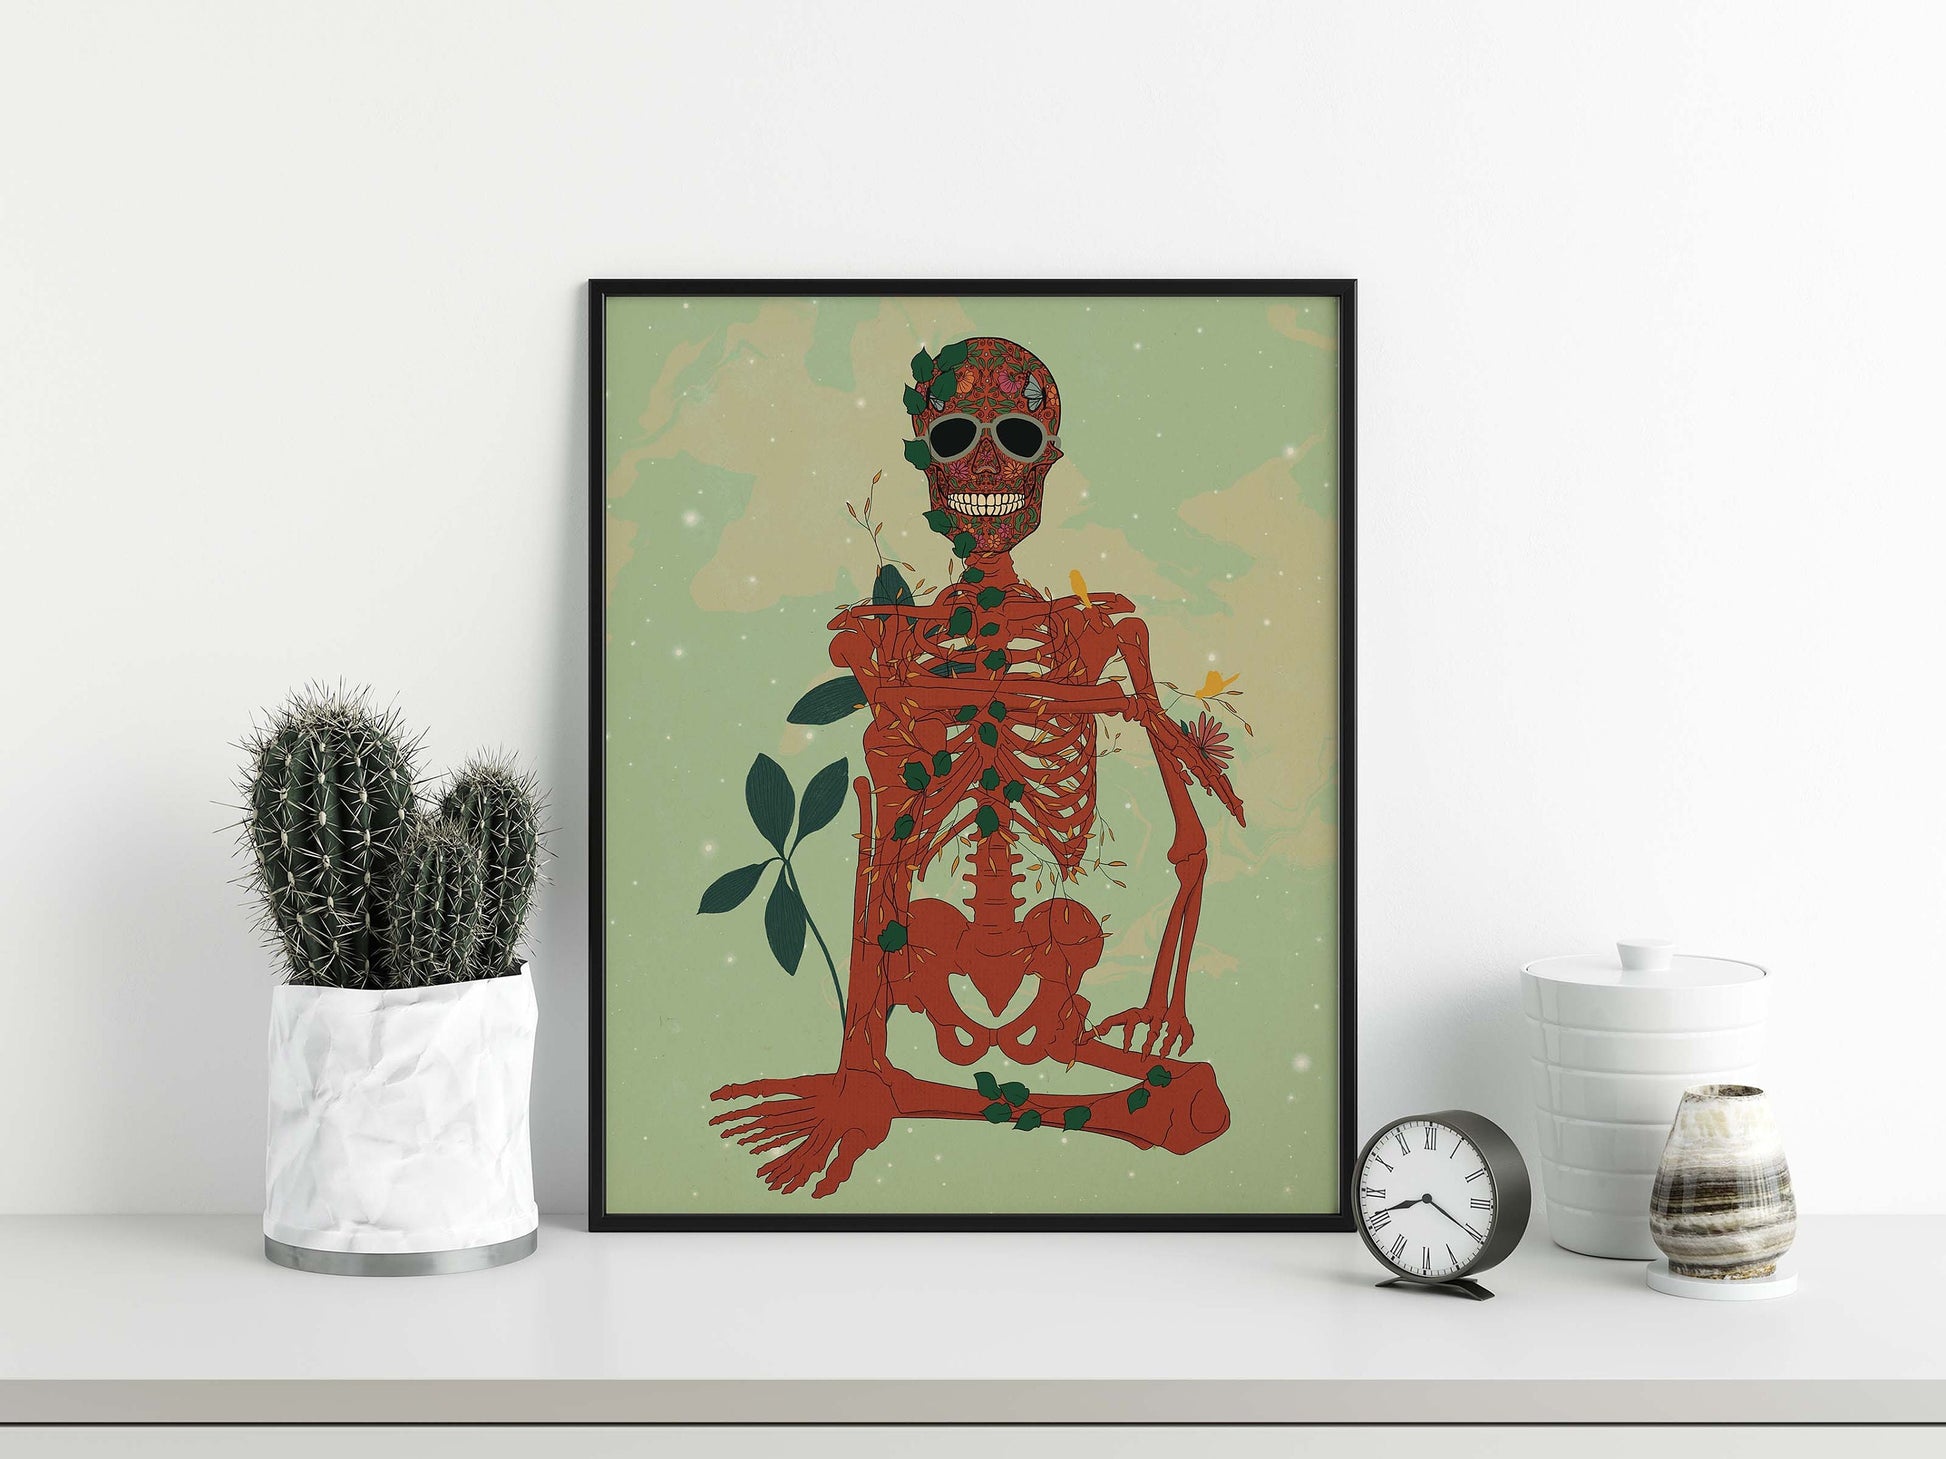 SKeleton Art Poster, Skeleton Wall Art, Skeleton Print